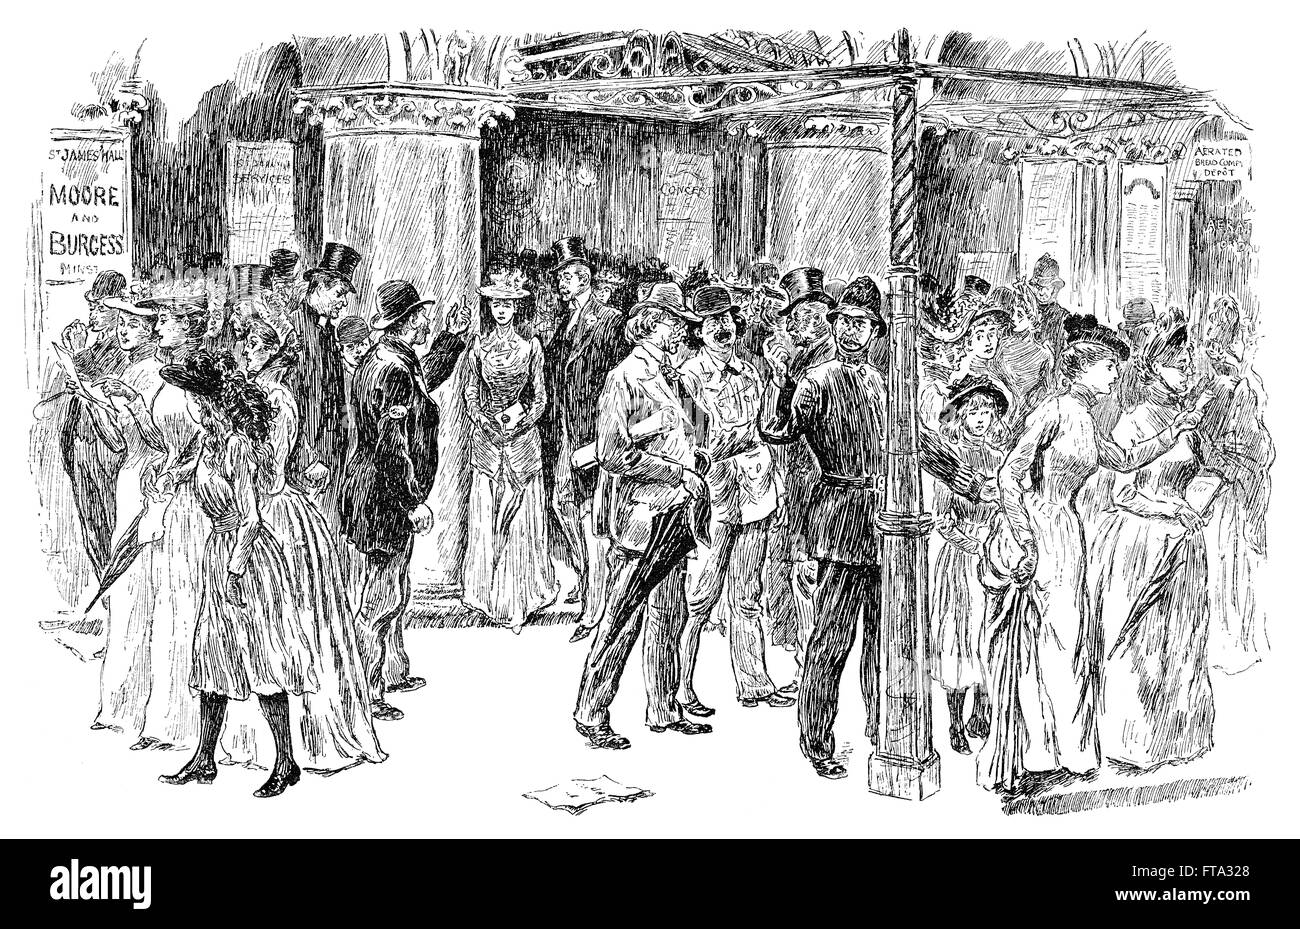 Schwarz / weiß Gravur von Victorians St. James Hall, Piccadilly, London nach einem Nachmittagskonzert zu verlassen. Stockfoto